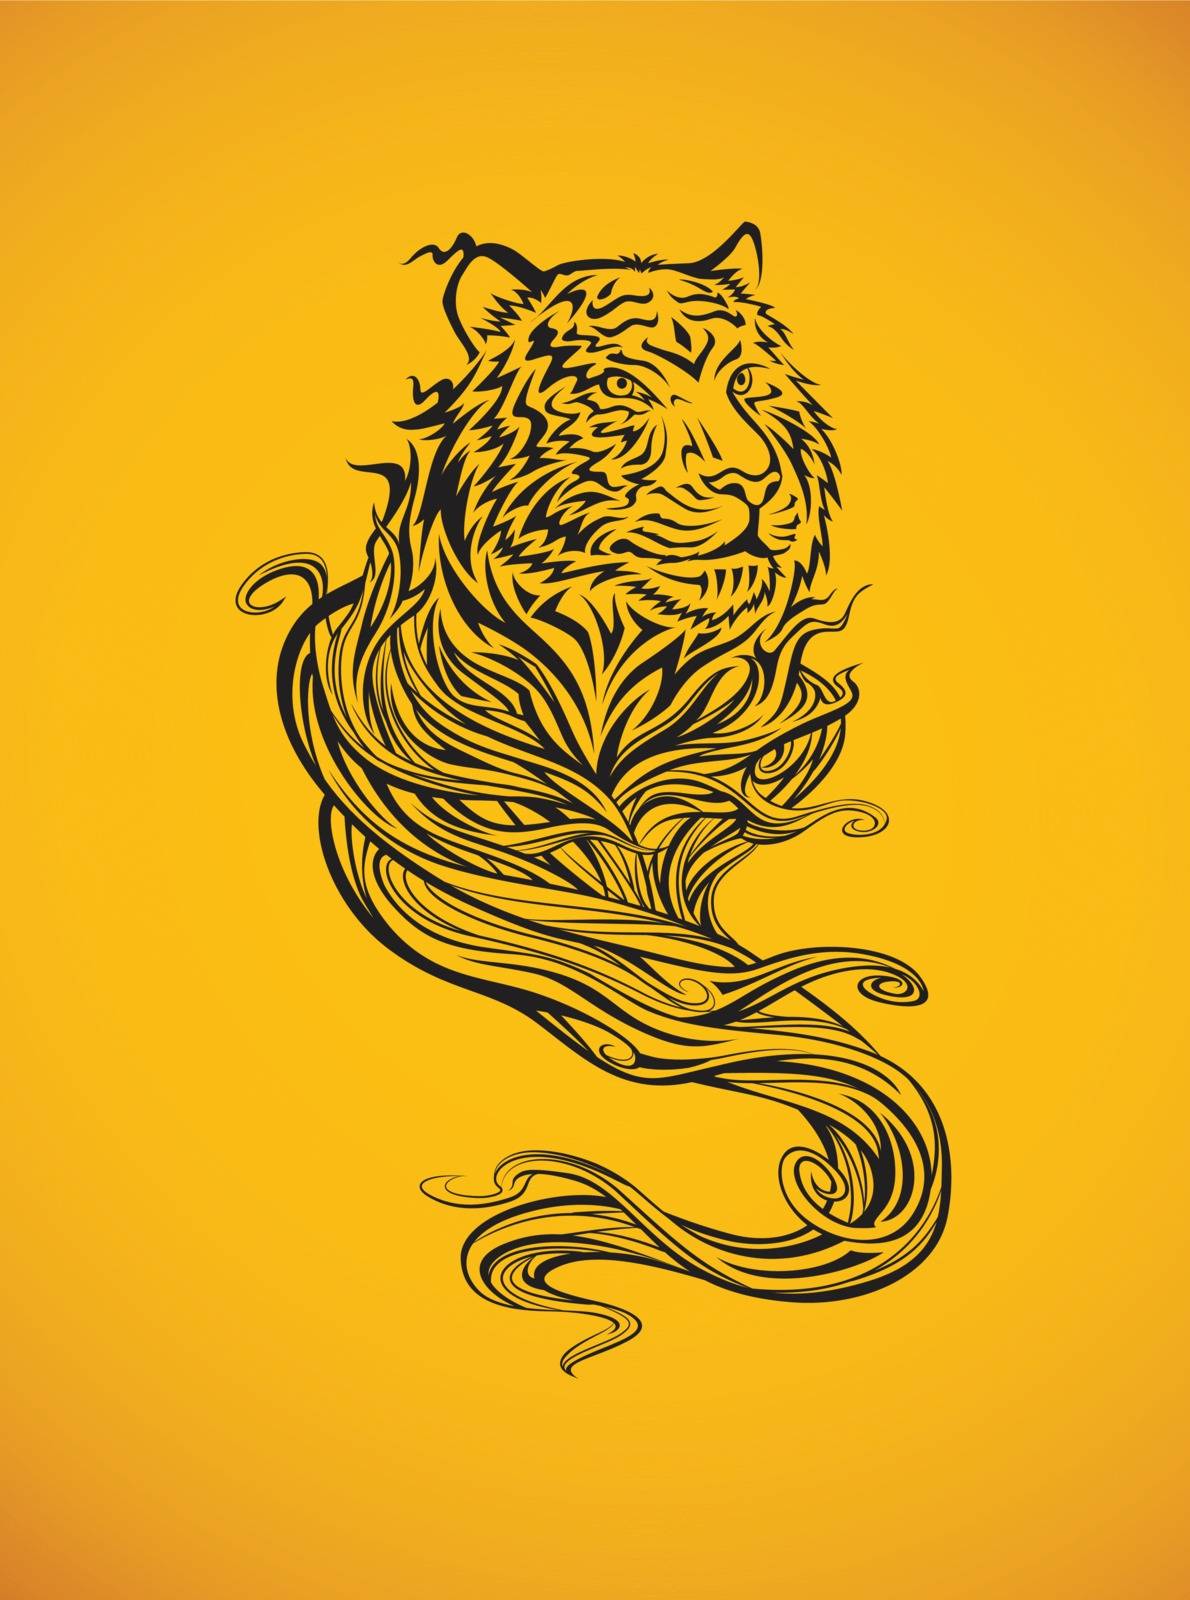 Tiger Spirit by kuzzie